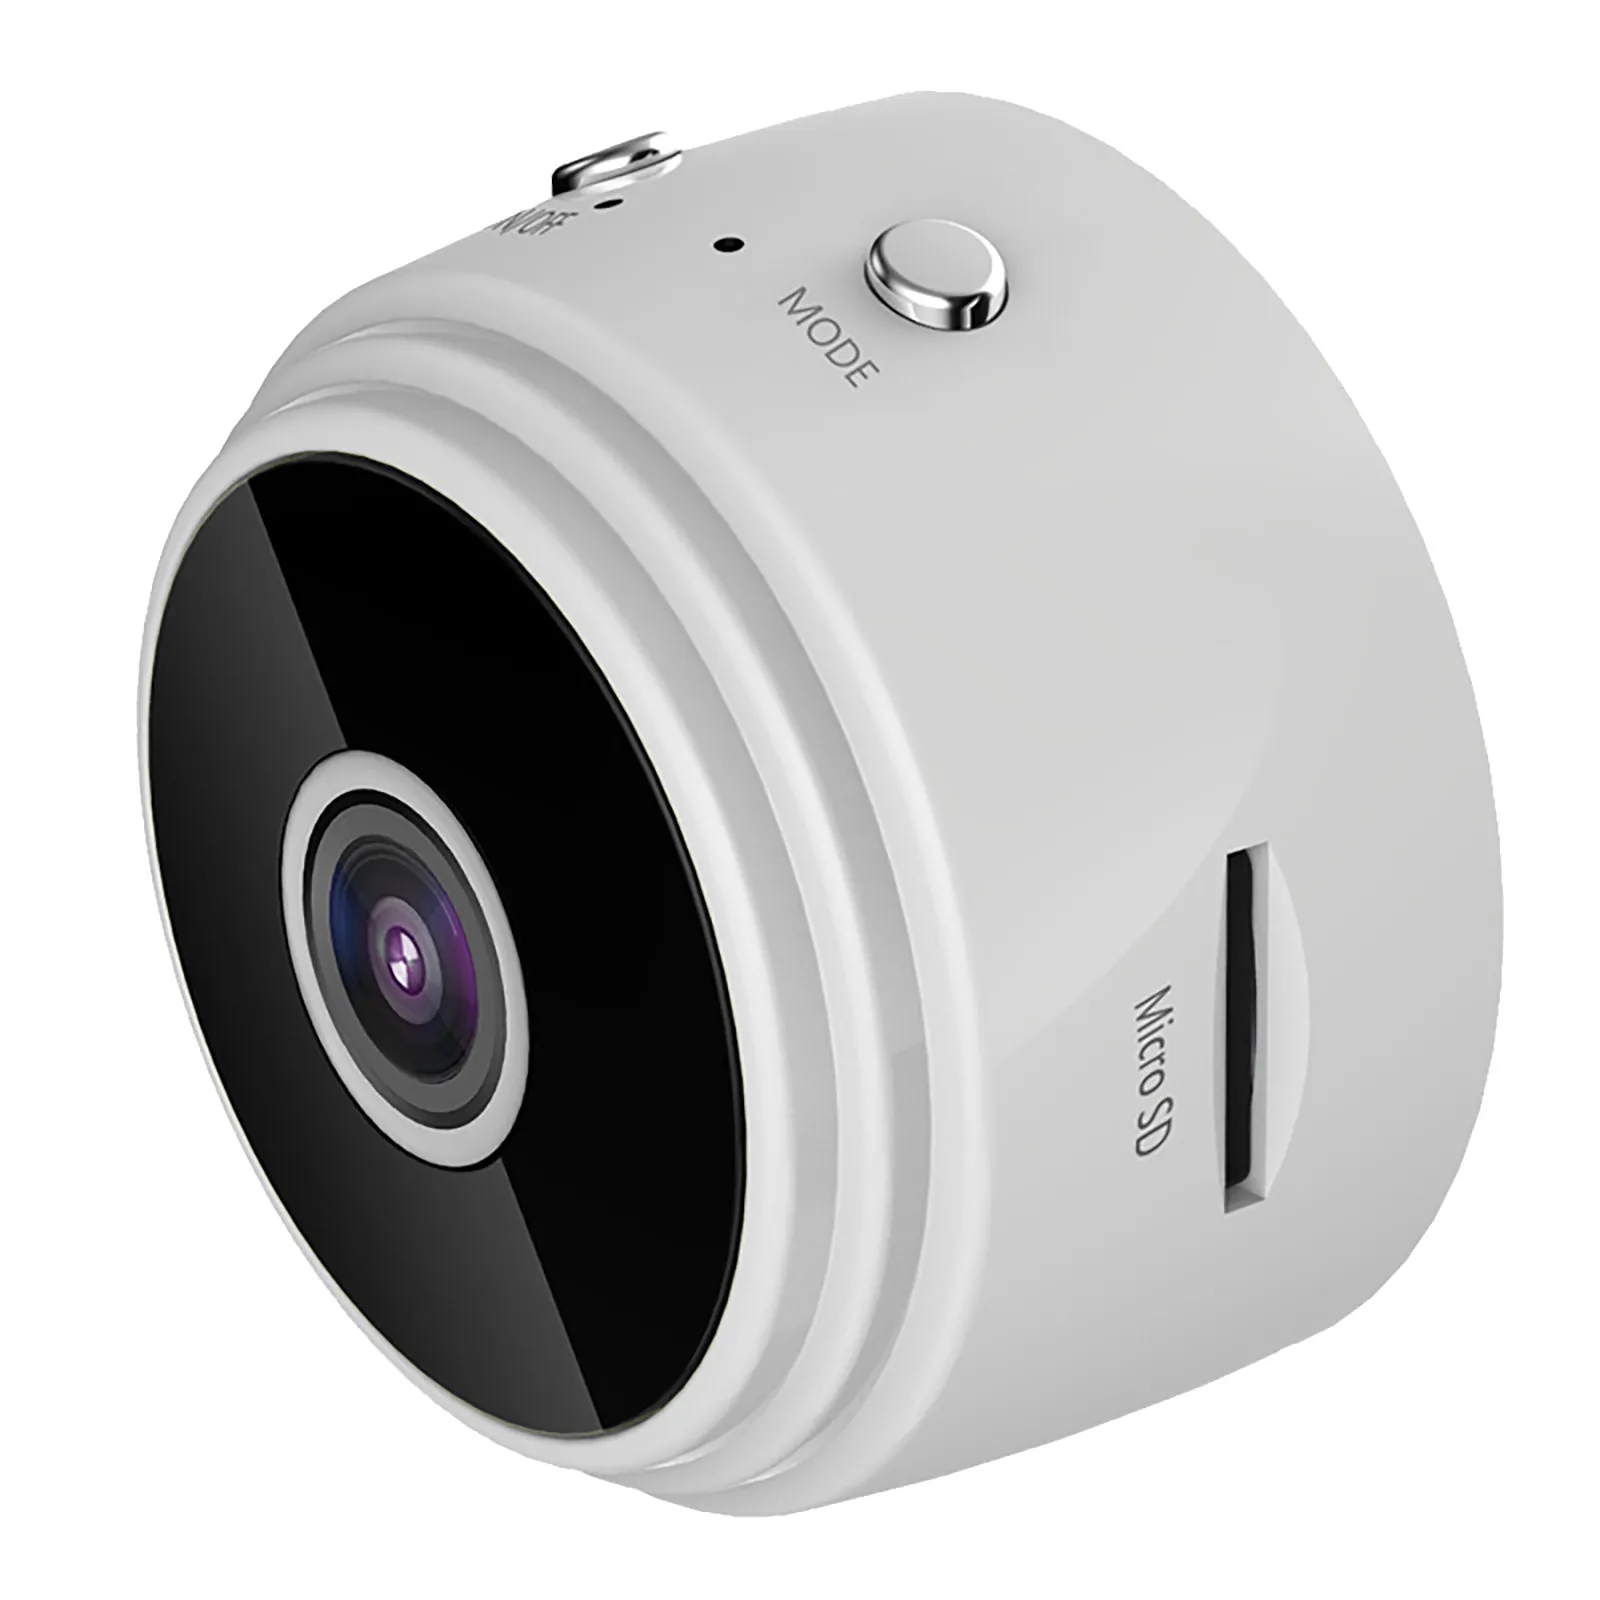 Мини-Камера 1080P HD Безопасности Пульт Дистанционного Управления Ночного Видения Мобильное Обнаружение Видеонаблюдение Wifi Камера скрытая камера